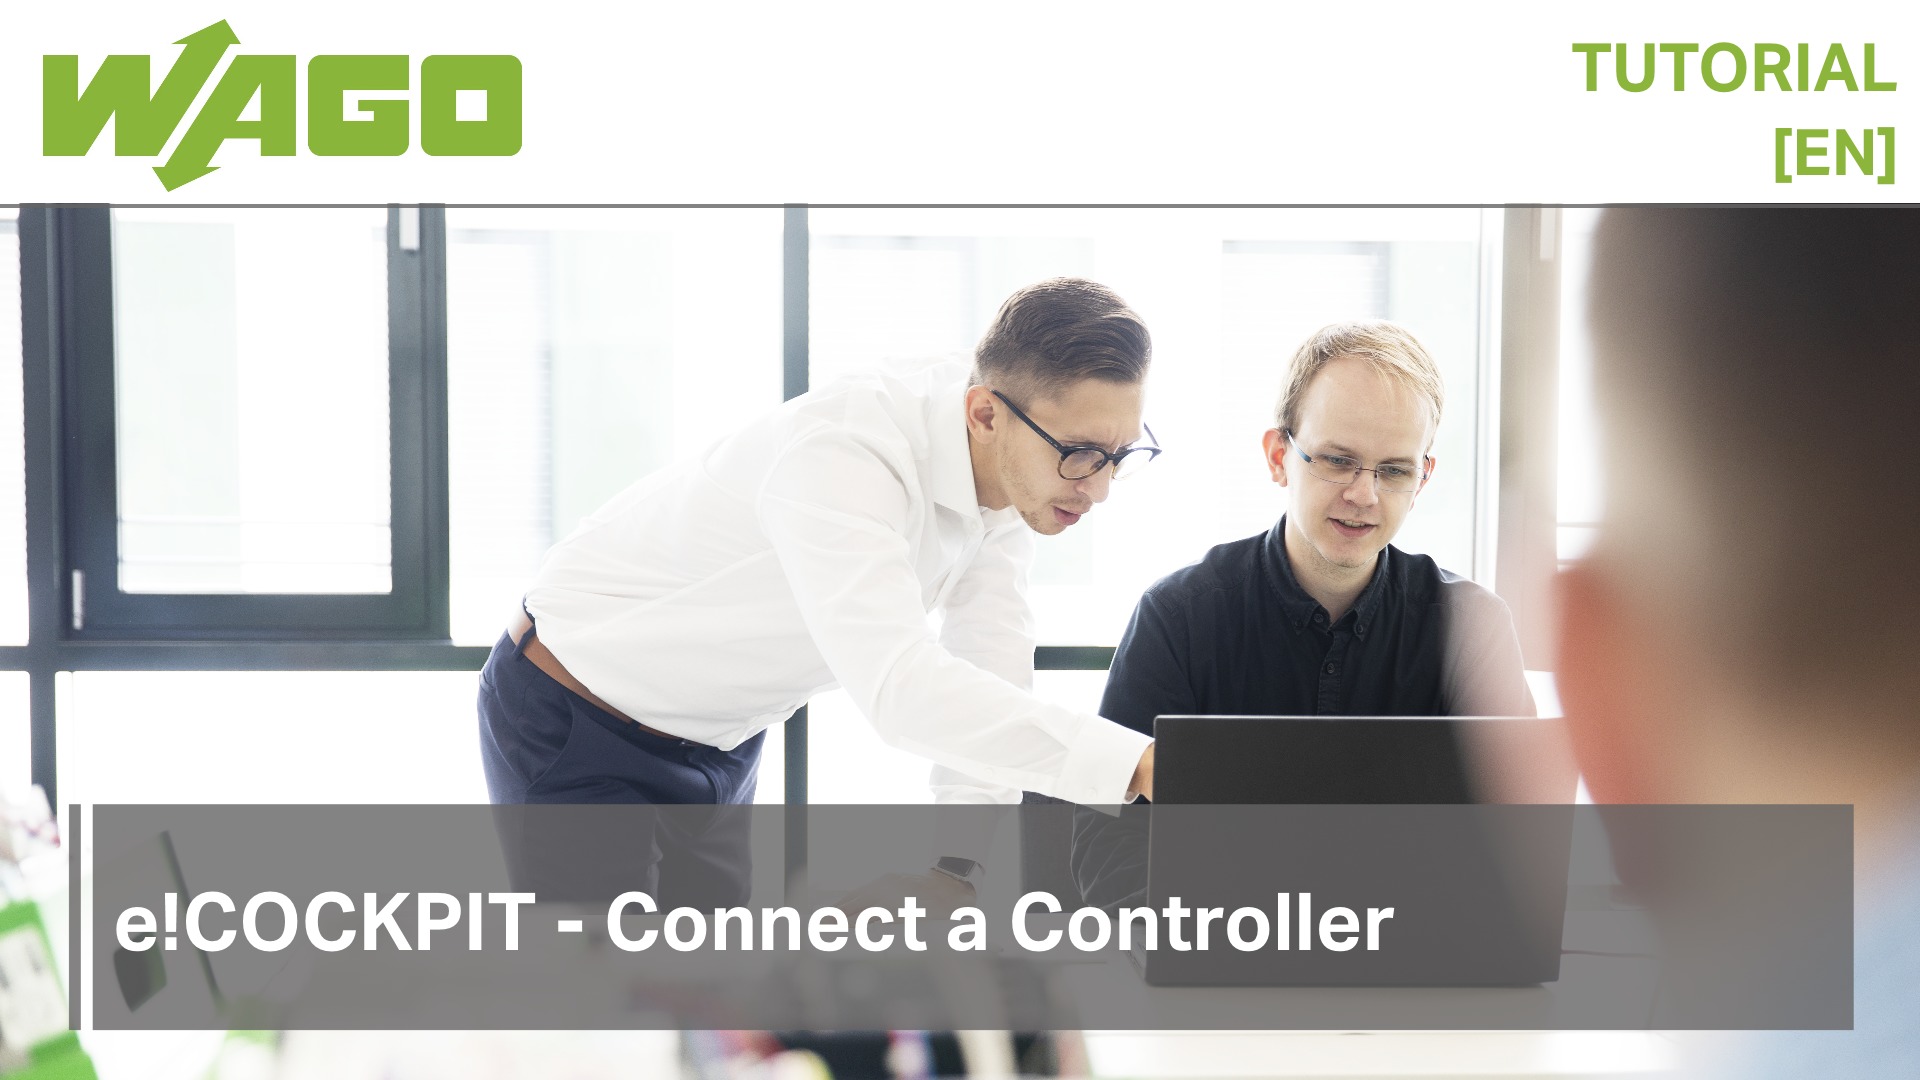 e!COCKPIT - Connect a Controller